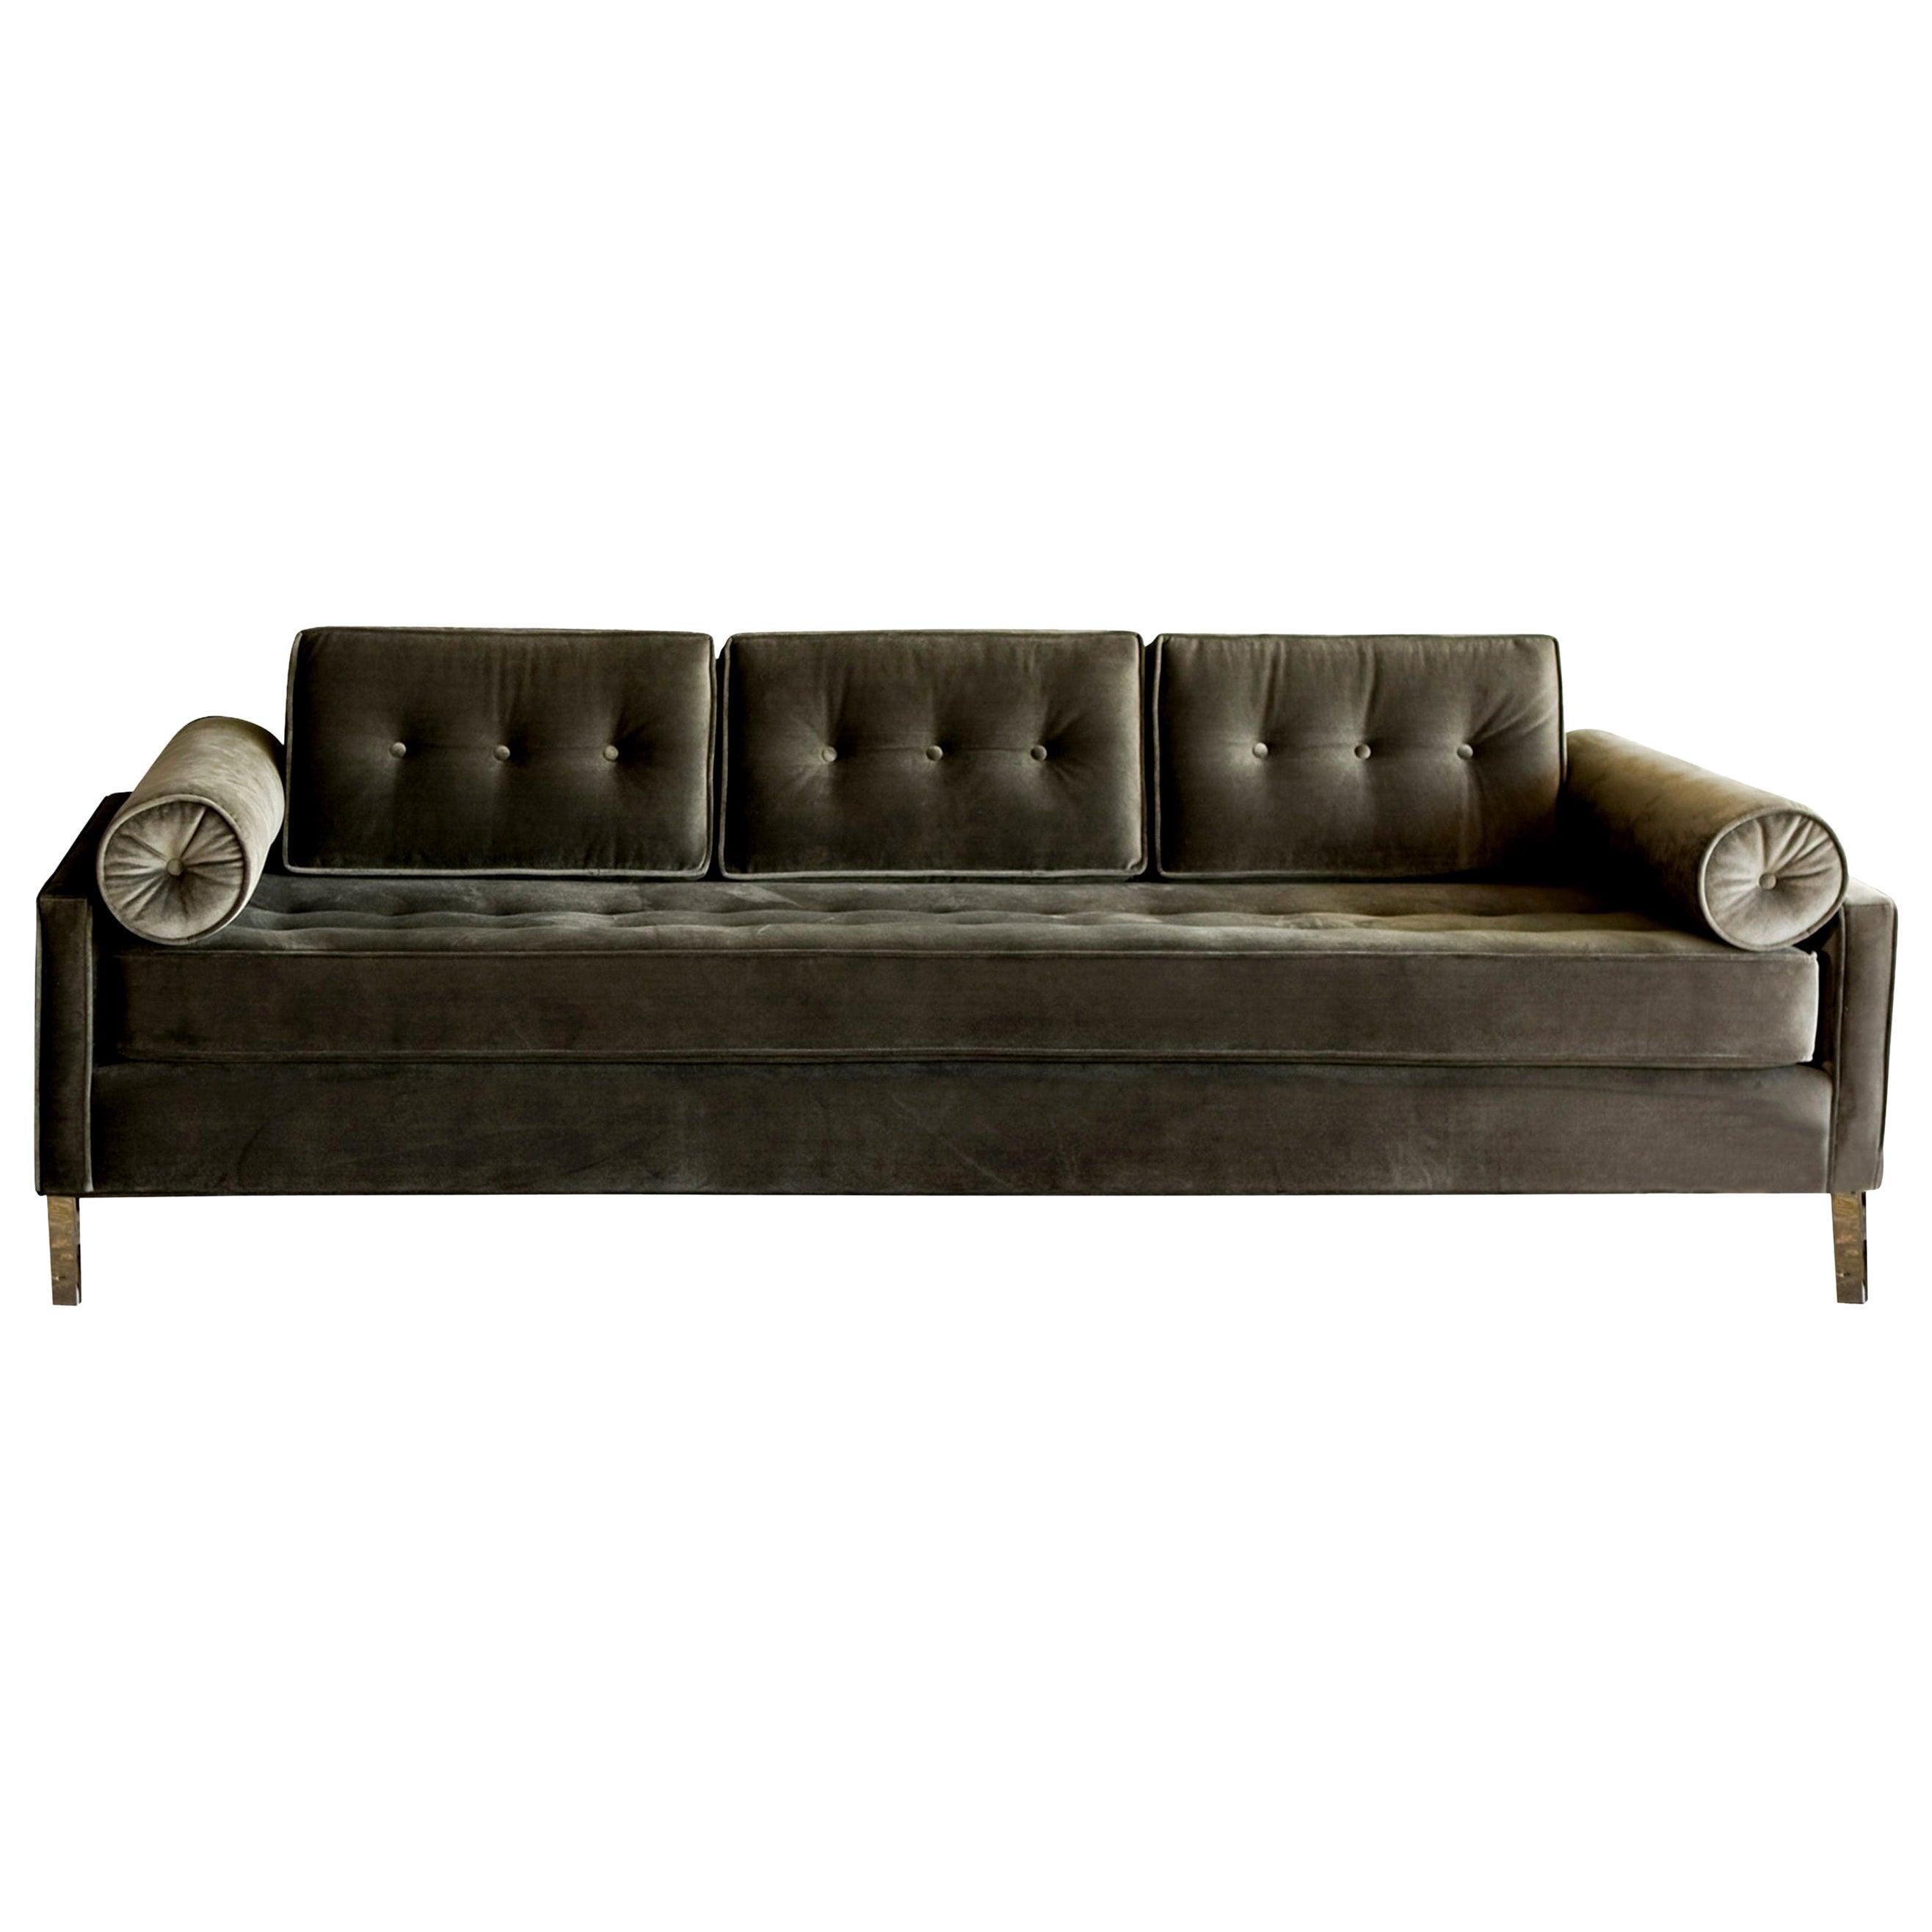 Das elegante und stilisierte Sofa Case #1 ist stromlinienförmig und bequem. Gepolstert mit hochwertigem, strapazierfähigem, zinnfarbenem Samt.

Das Sofa kann mit einer Vielzahl von Stofffarben und -optionen nach Ihren Wünschen gestaltet